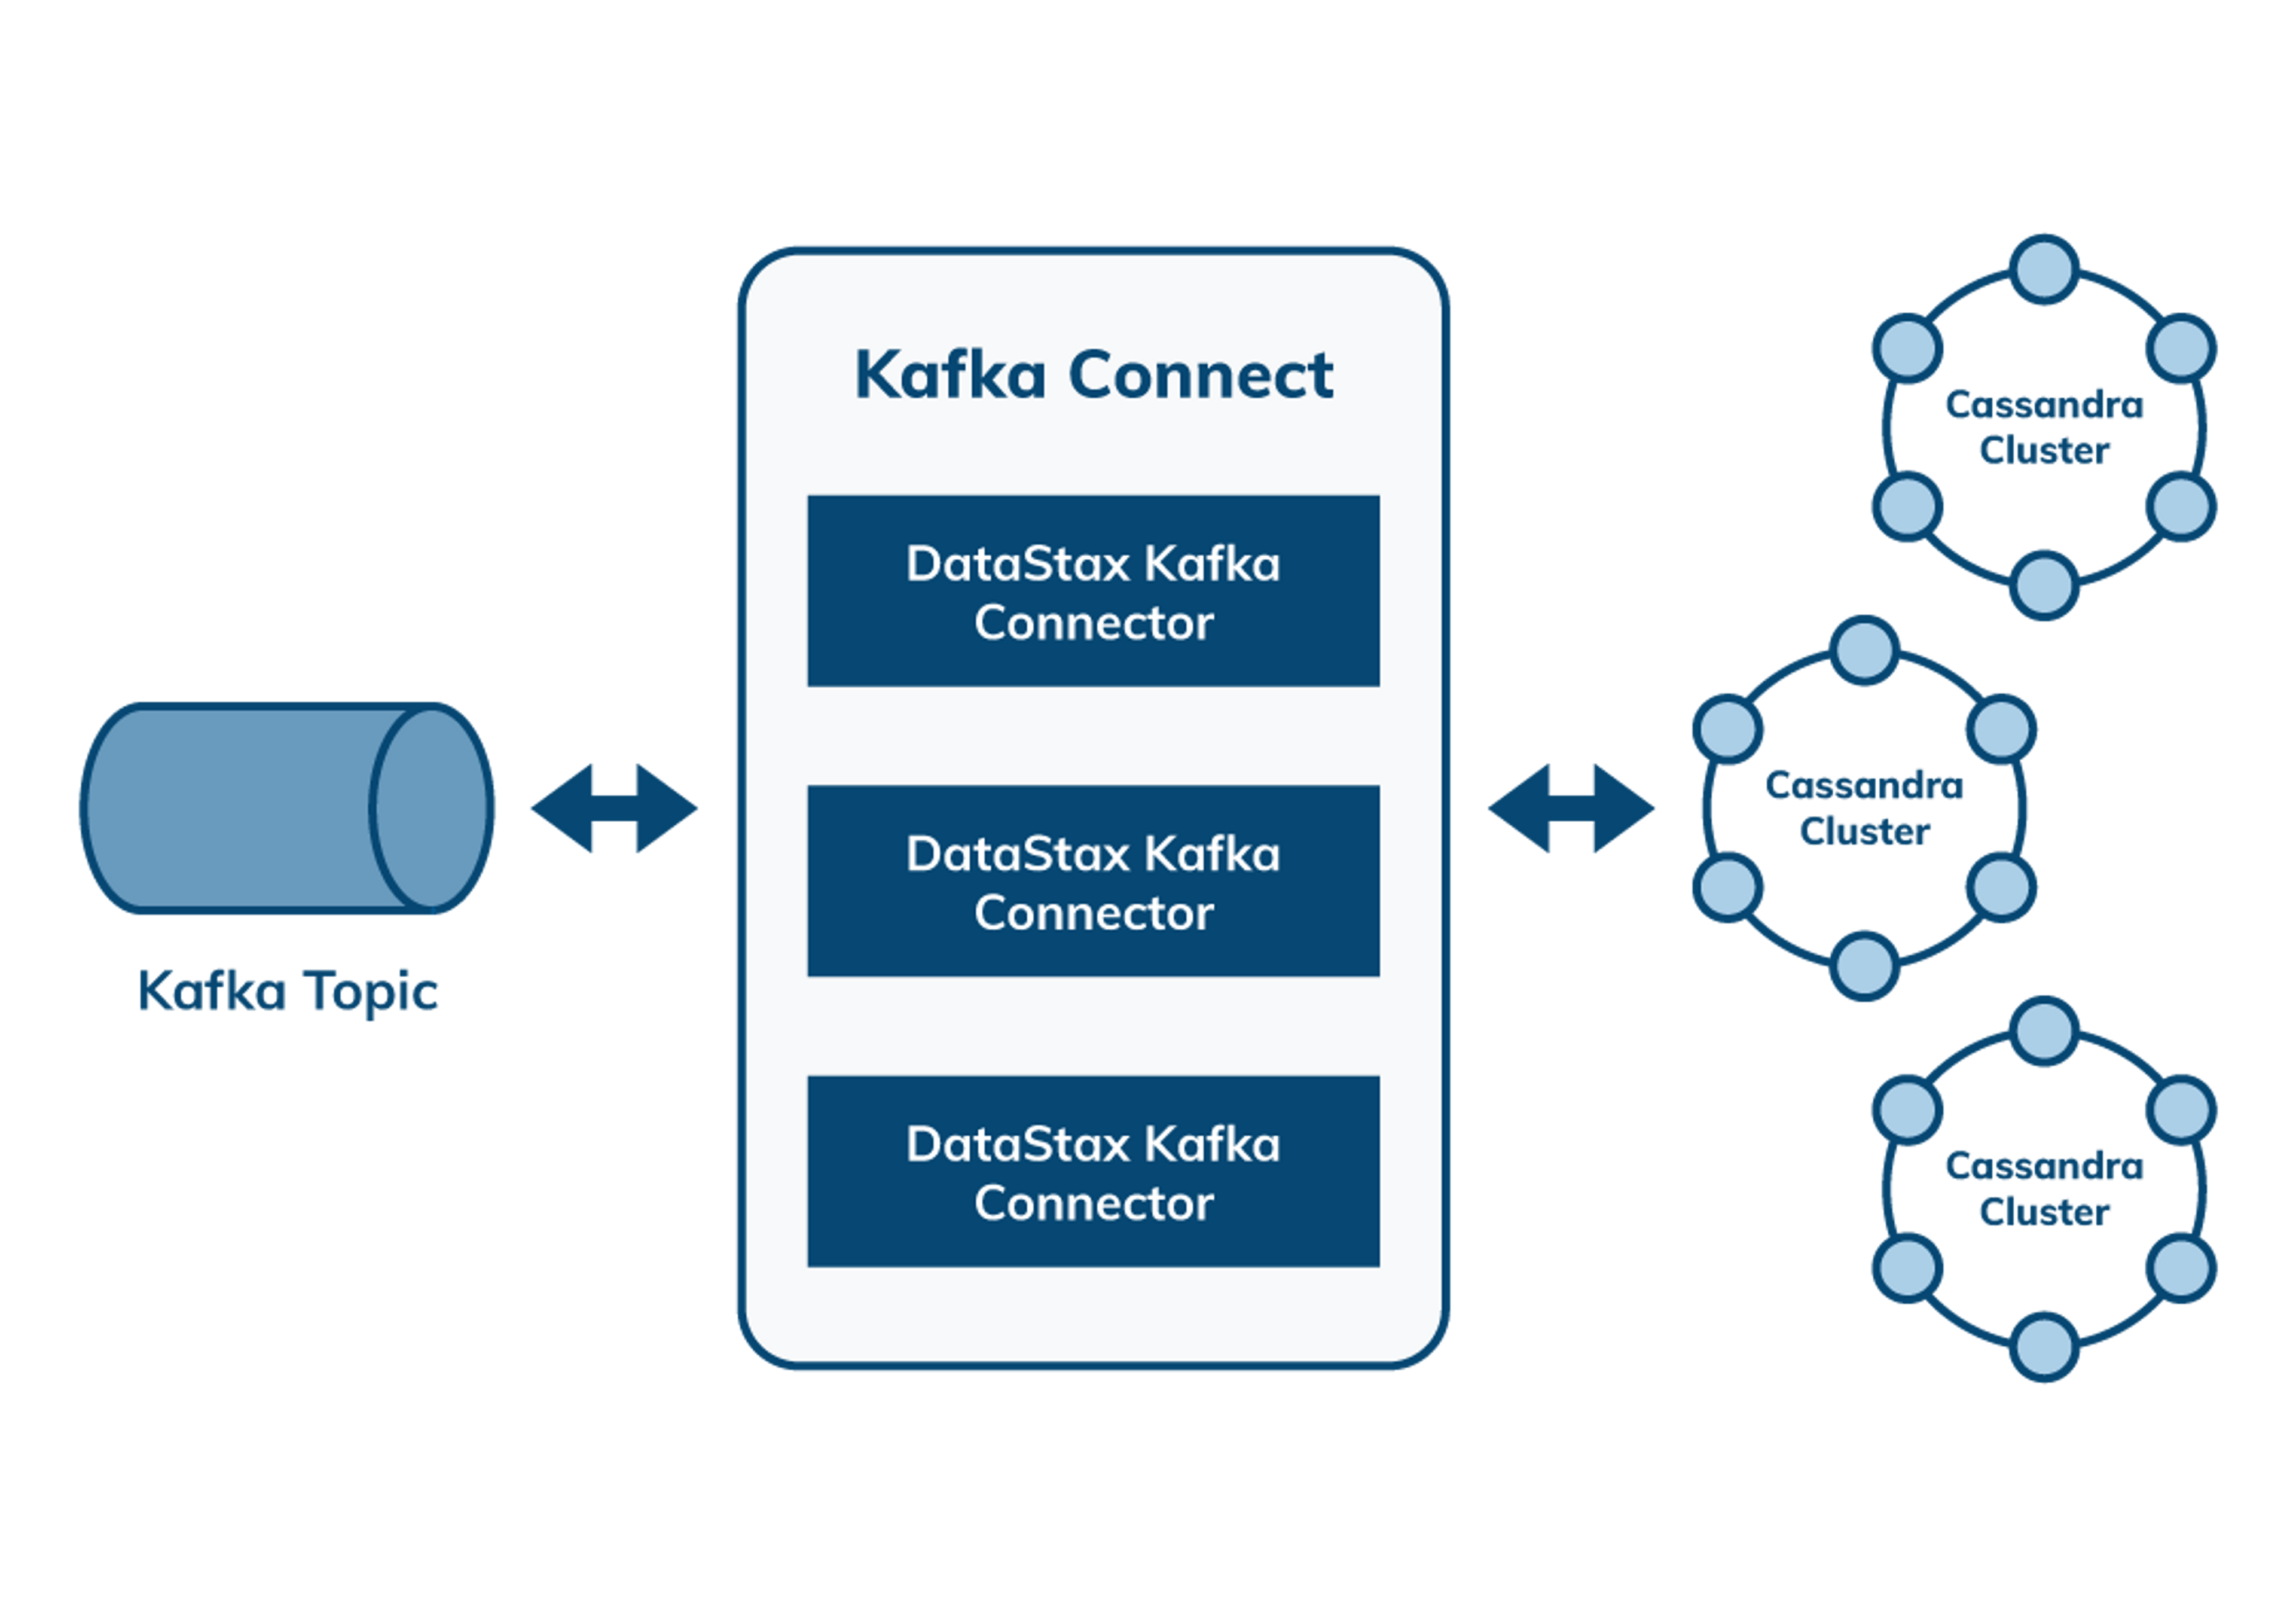 DataStax’s Kafka Connector